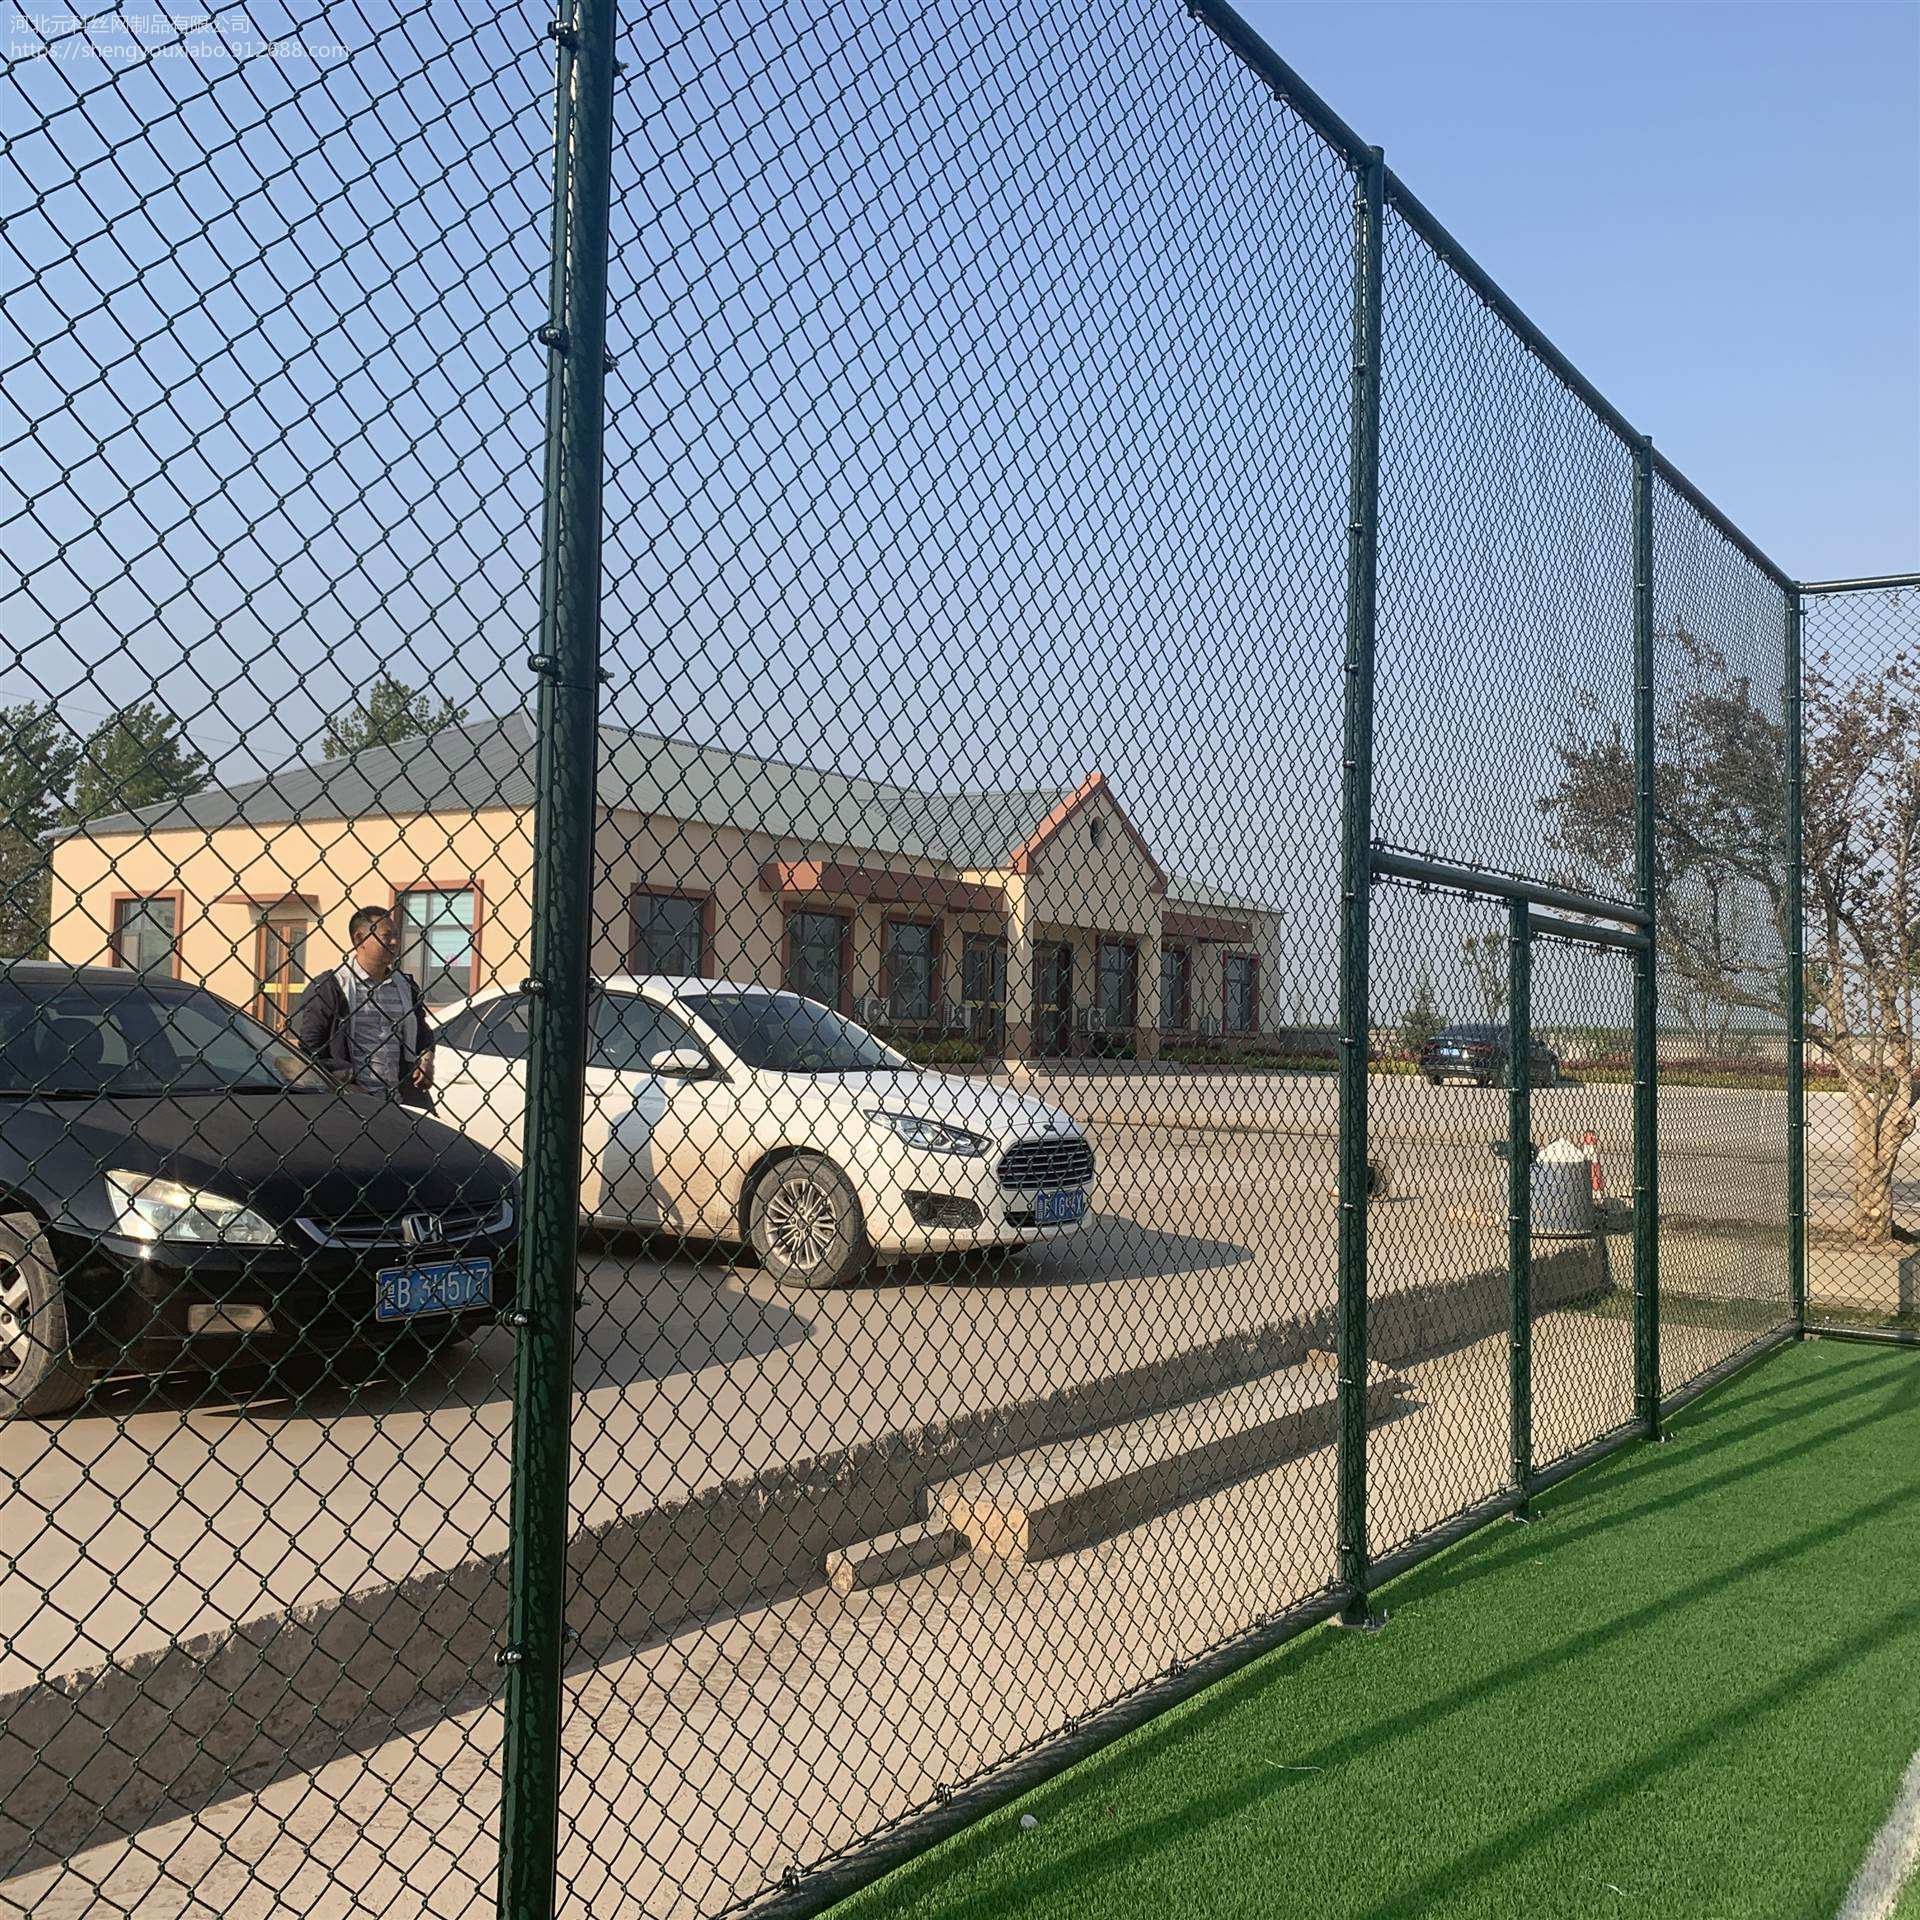 墨绿色球场隔离网 运动场围挡 篮球围栏网加工定做 夏博图片